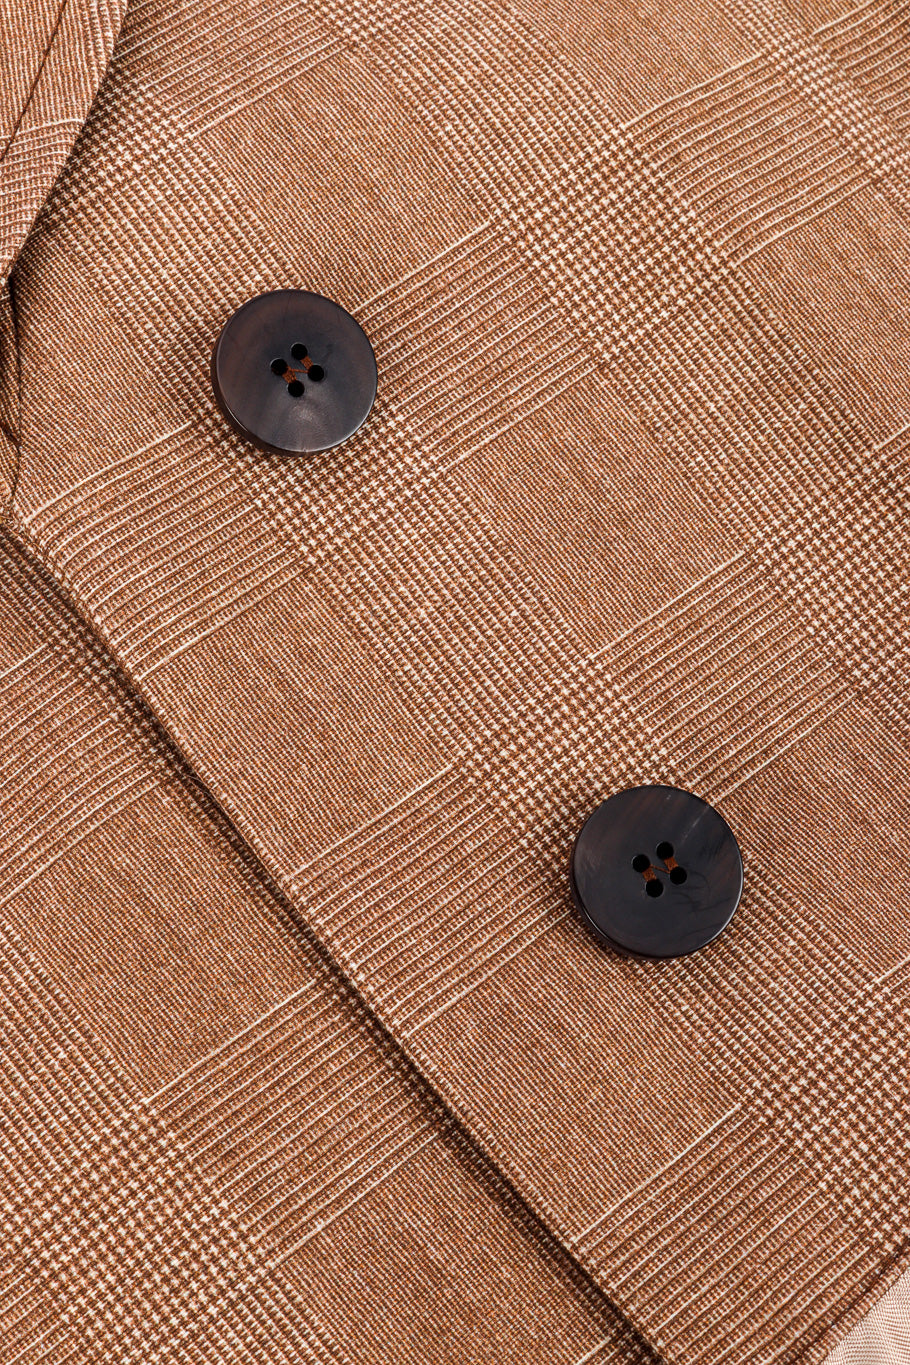 Chloé Equin Print Plaid Trench Coat button closure closeup @recessla